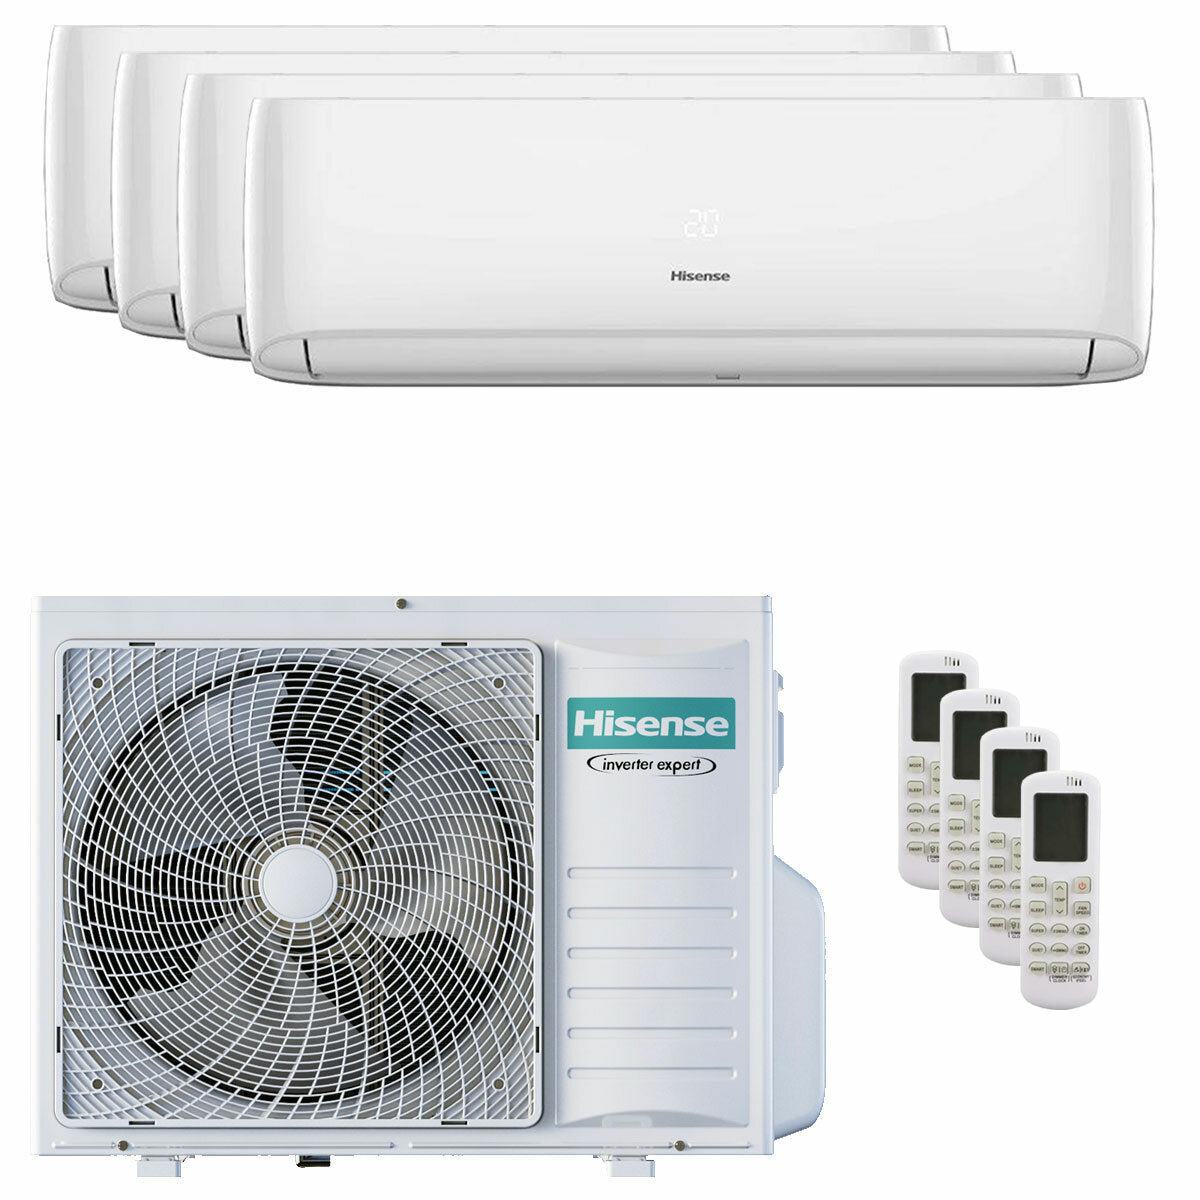 Hisense Hi-Comfort climatiseur split quadri 7000 + 9000 + 12000 + 12000 BTU onduleur A++ wifi unité extérieure 8 kW